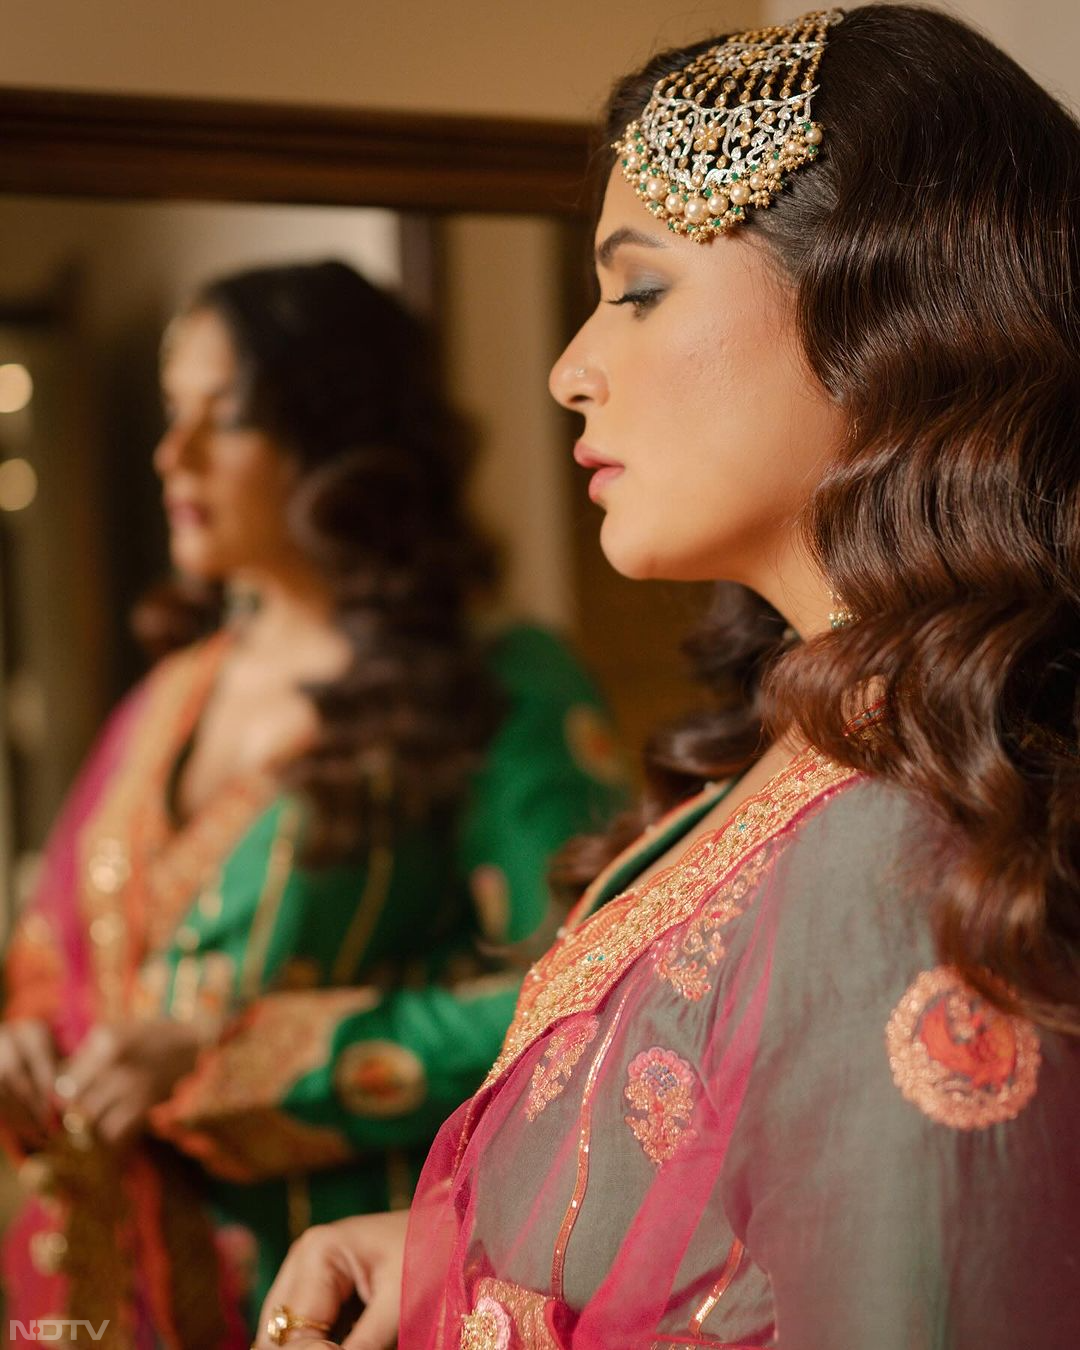 मीना कुमारी है हीरामंडी के लिए इस एक्ट्रेस की प्रेरणा, पाकीजा के किरदार से बहुत कुछ सीखा